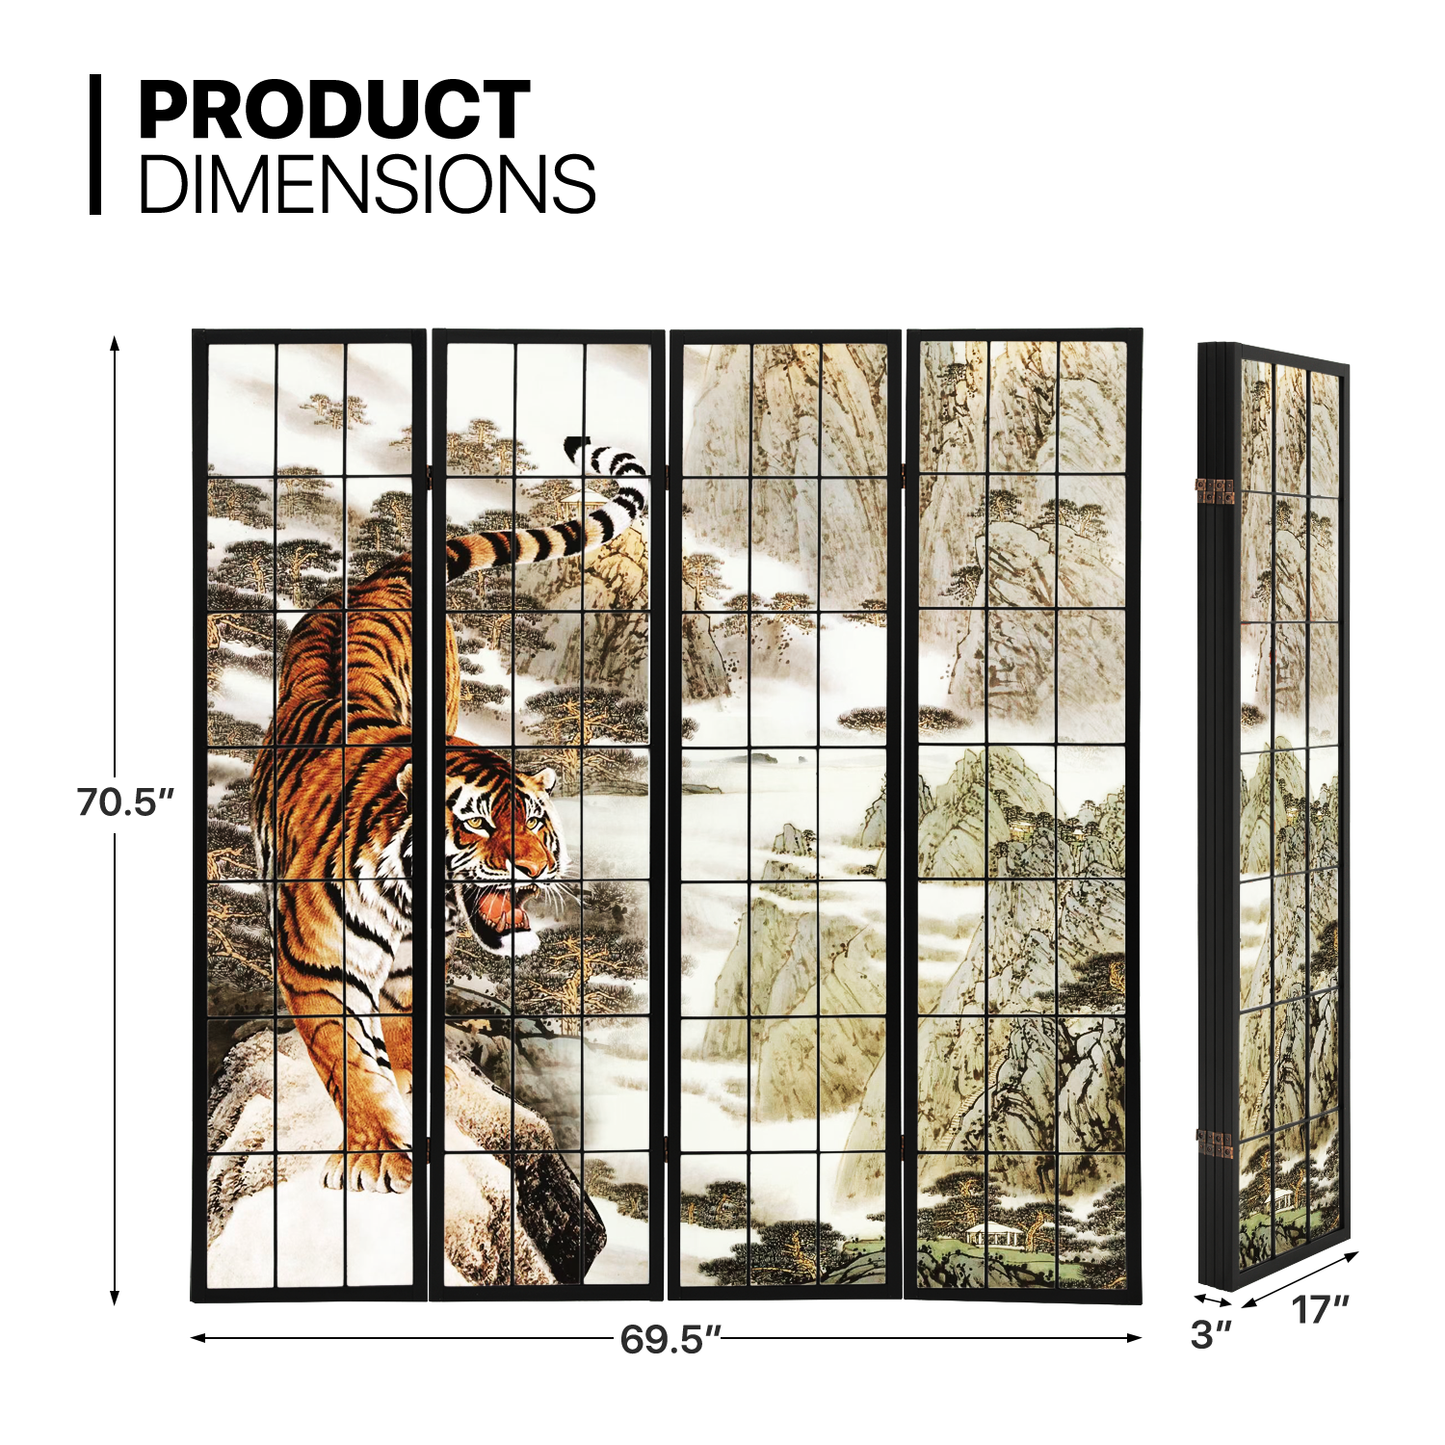 Foldable Room Divider - Tiger Pattern - 4 Panel